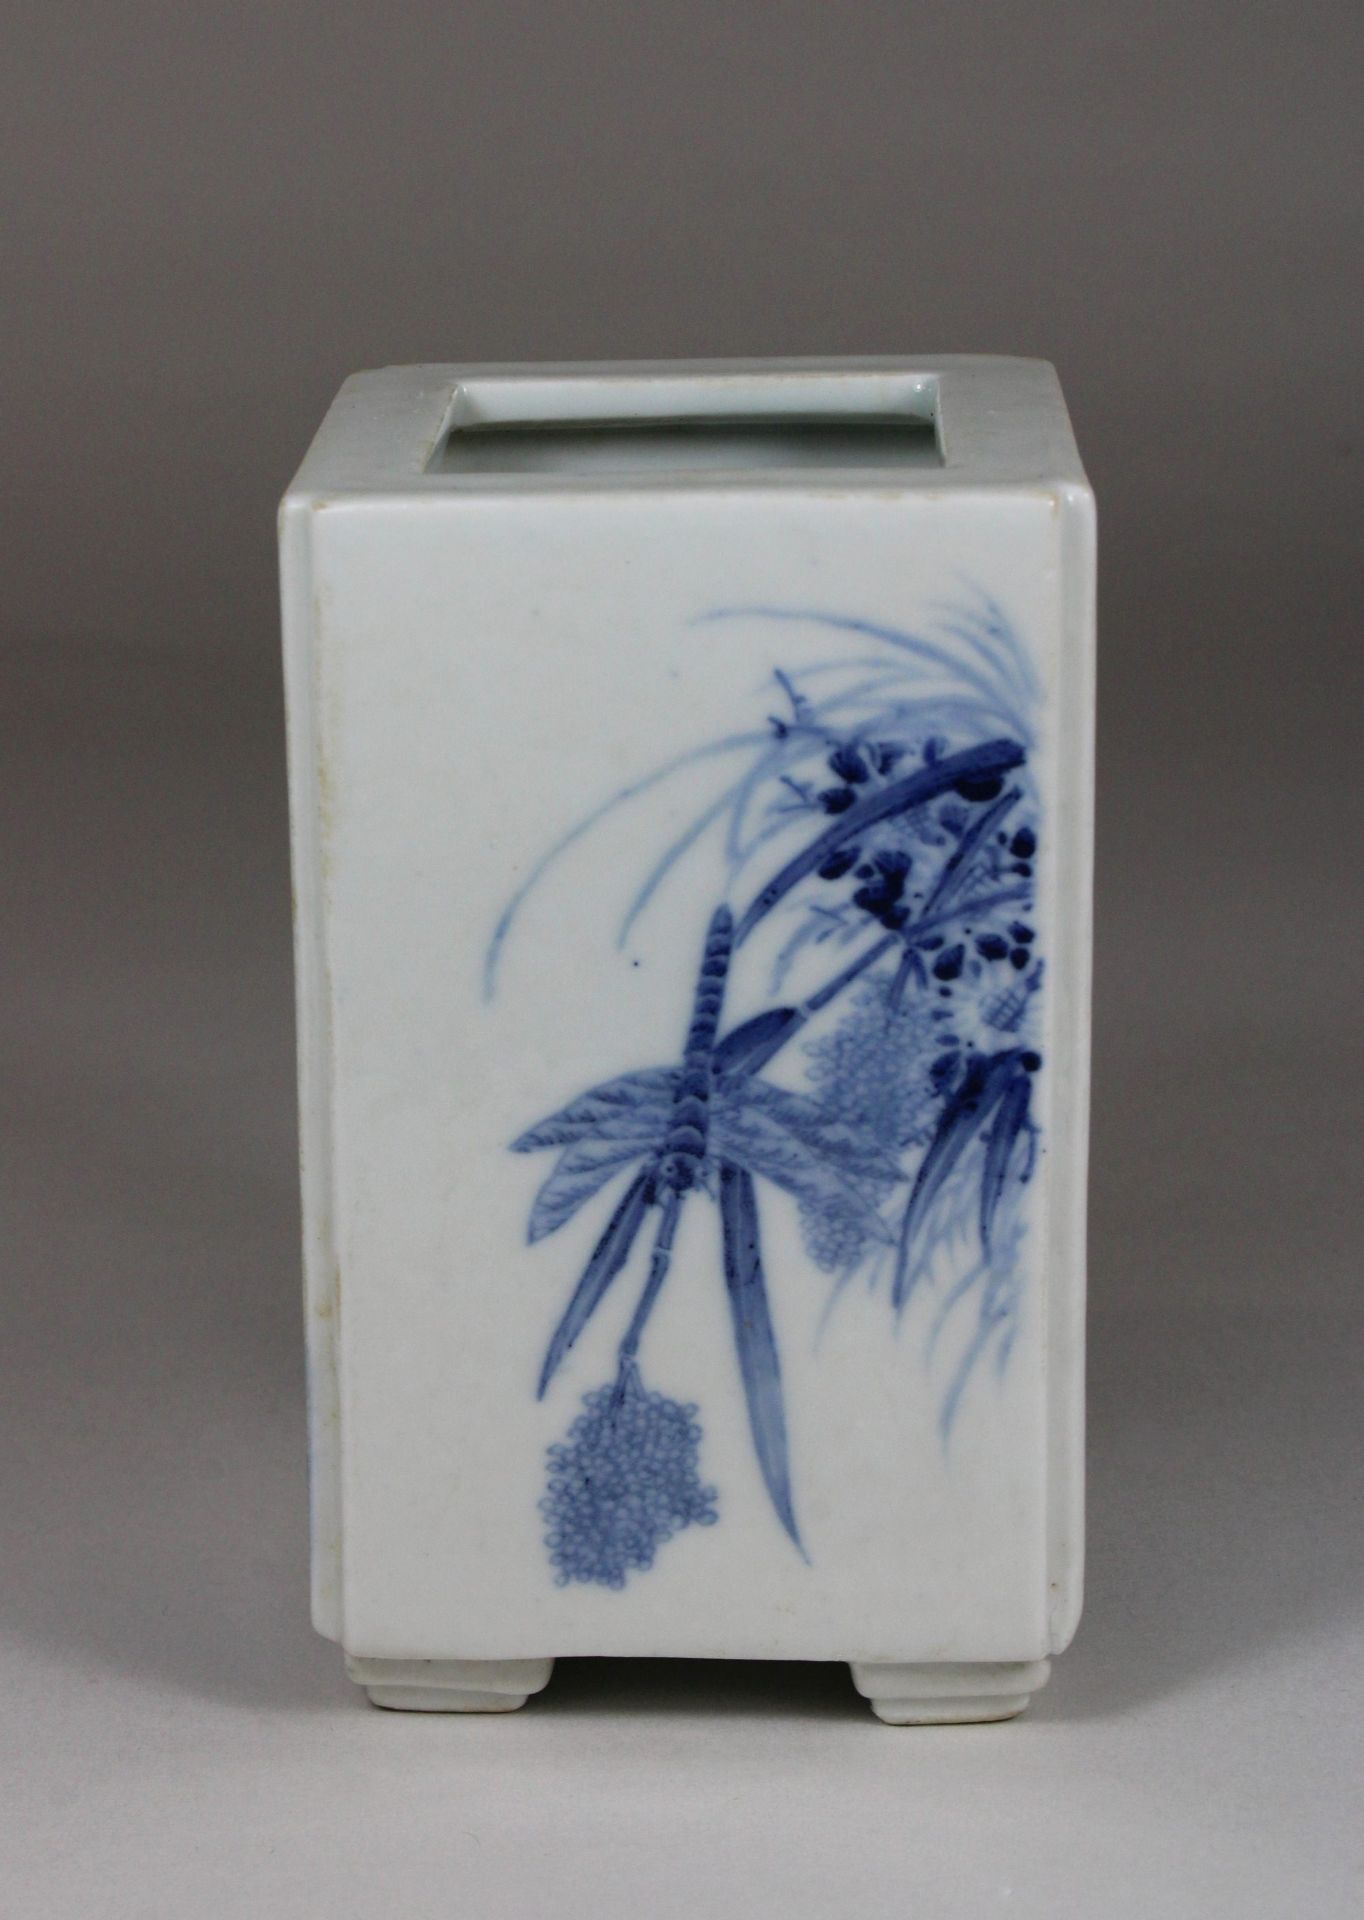 Chinesische quadratische Vase in Blau - Weiß, Figurative und florale Darstellung, H 12 cm, B 7 cm,